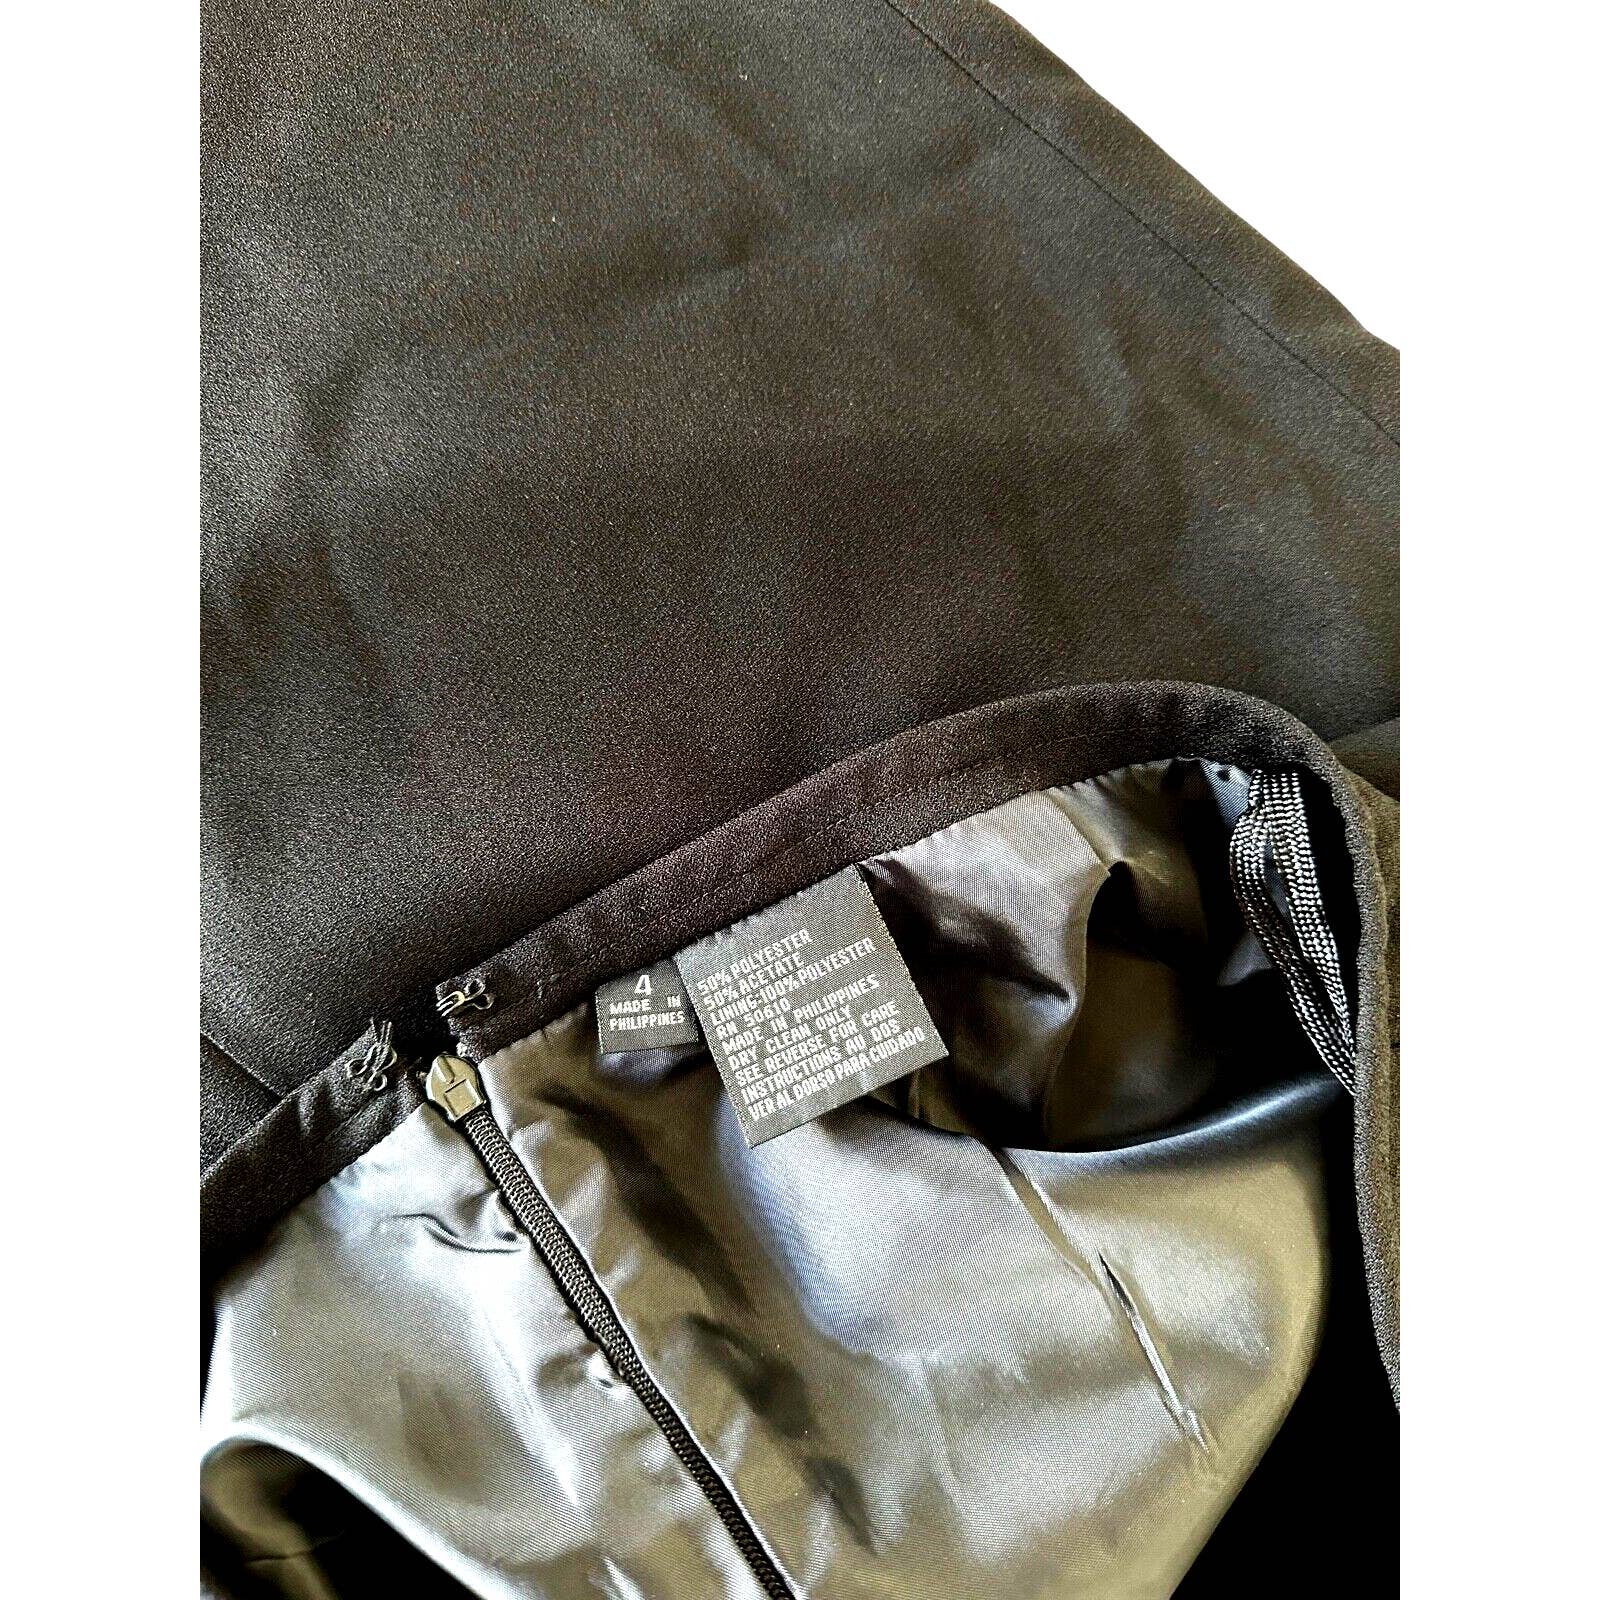 big discount Women´s Suit Skirt Size 4 Black ia6StrRGD Store Online